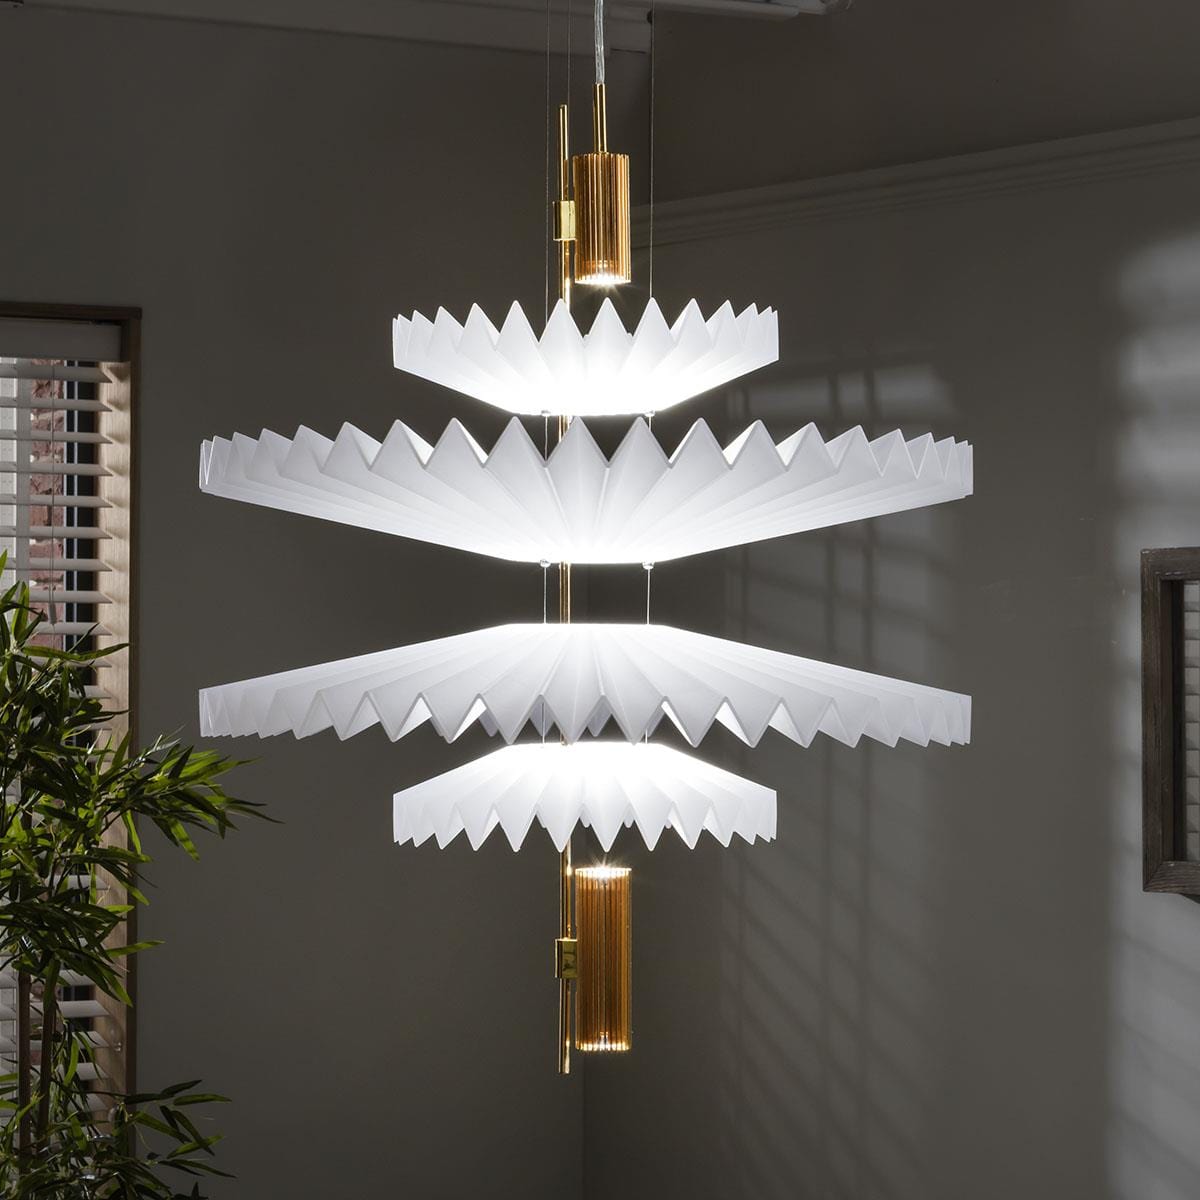 Quatropi Luxury Retro-Inspired Ceiling Light - Luxury White & Gold Pendant 60cm